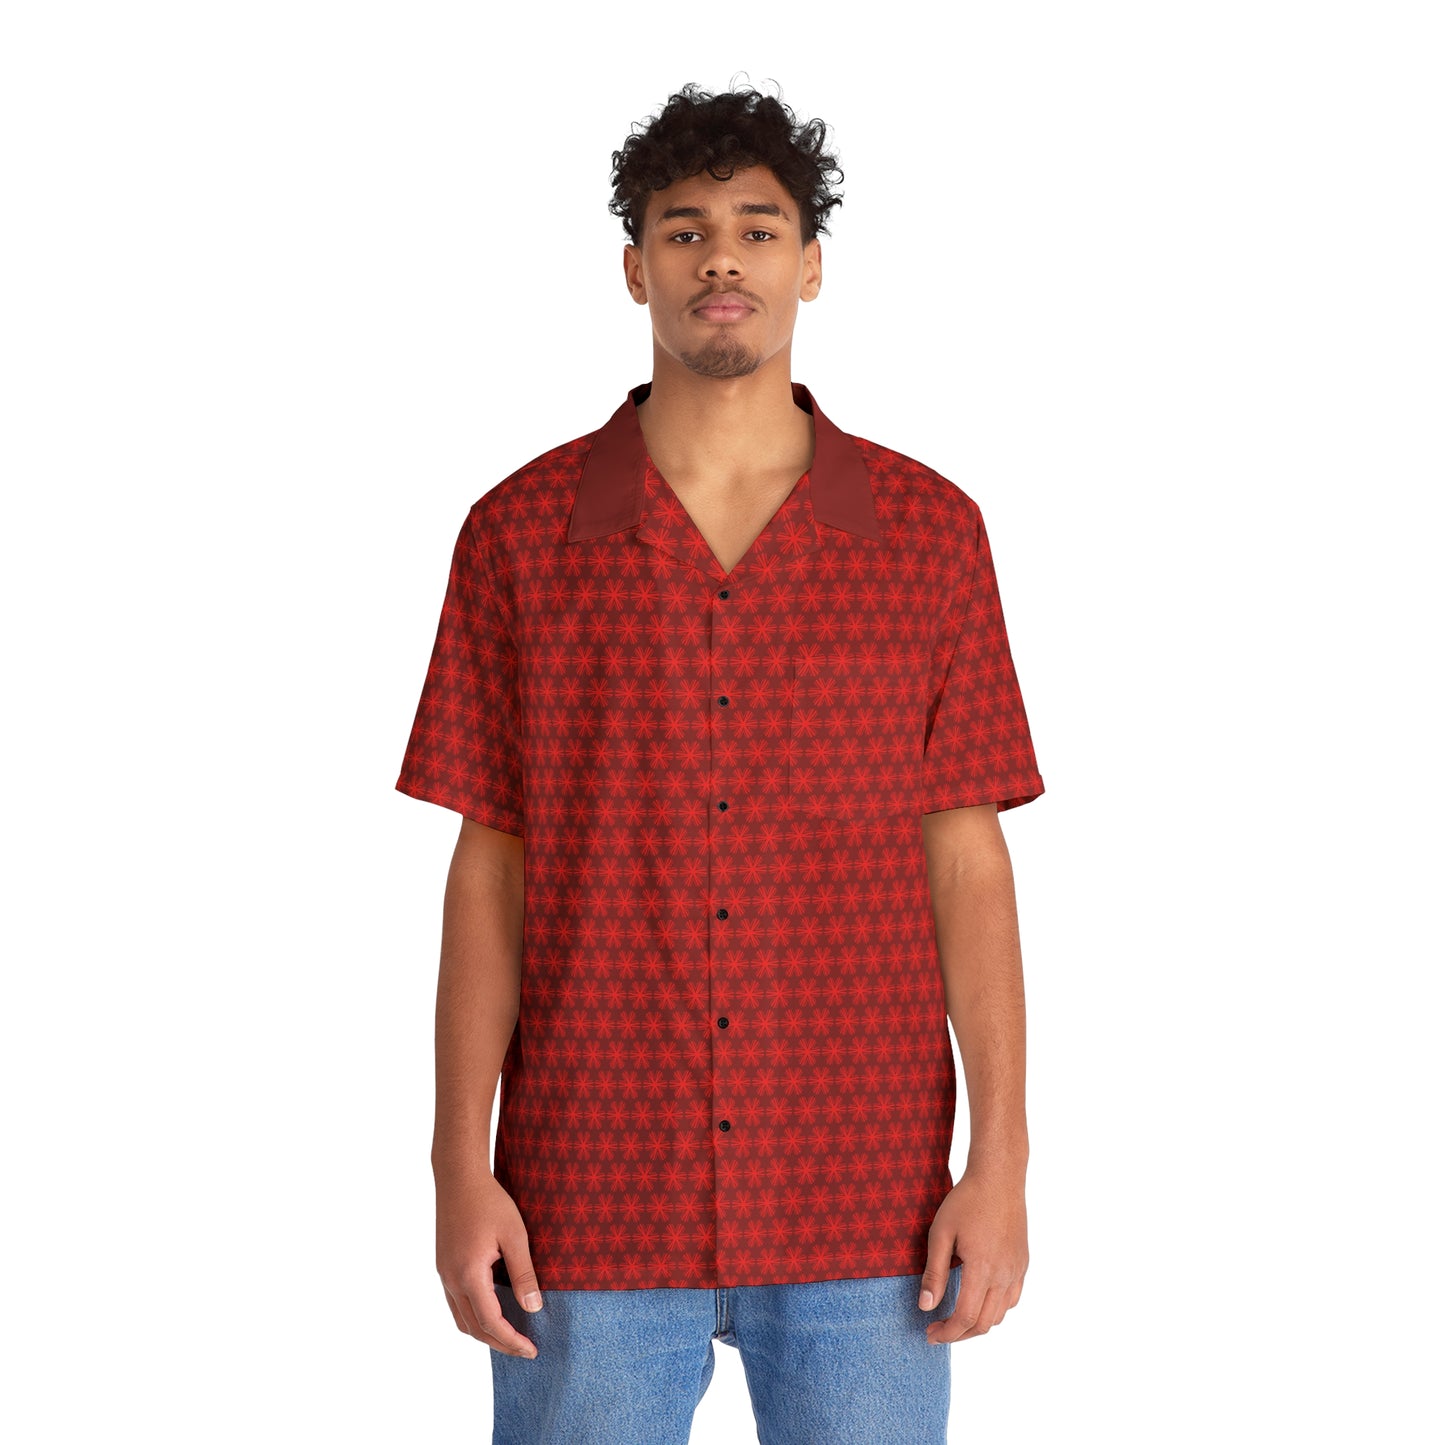 Red V Star Pattern - Red collar - Men's Hawaiian Shirt